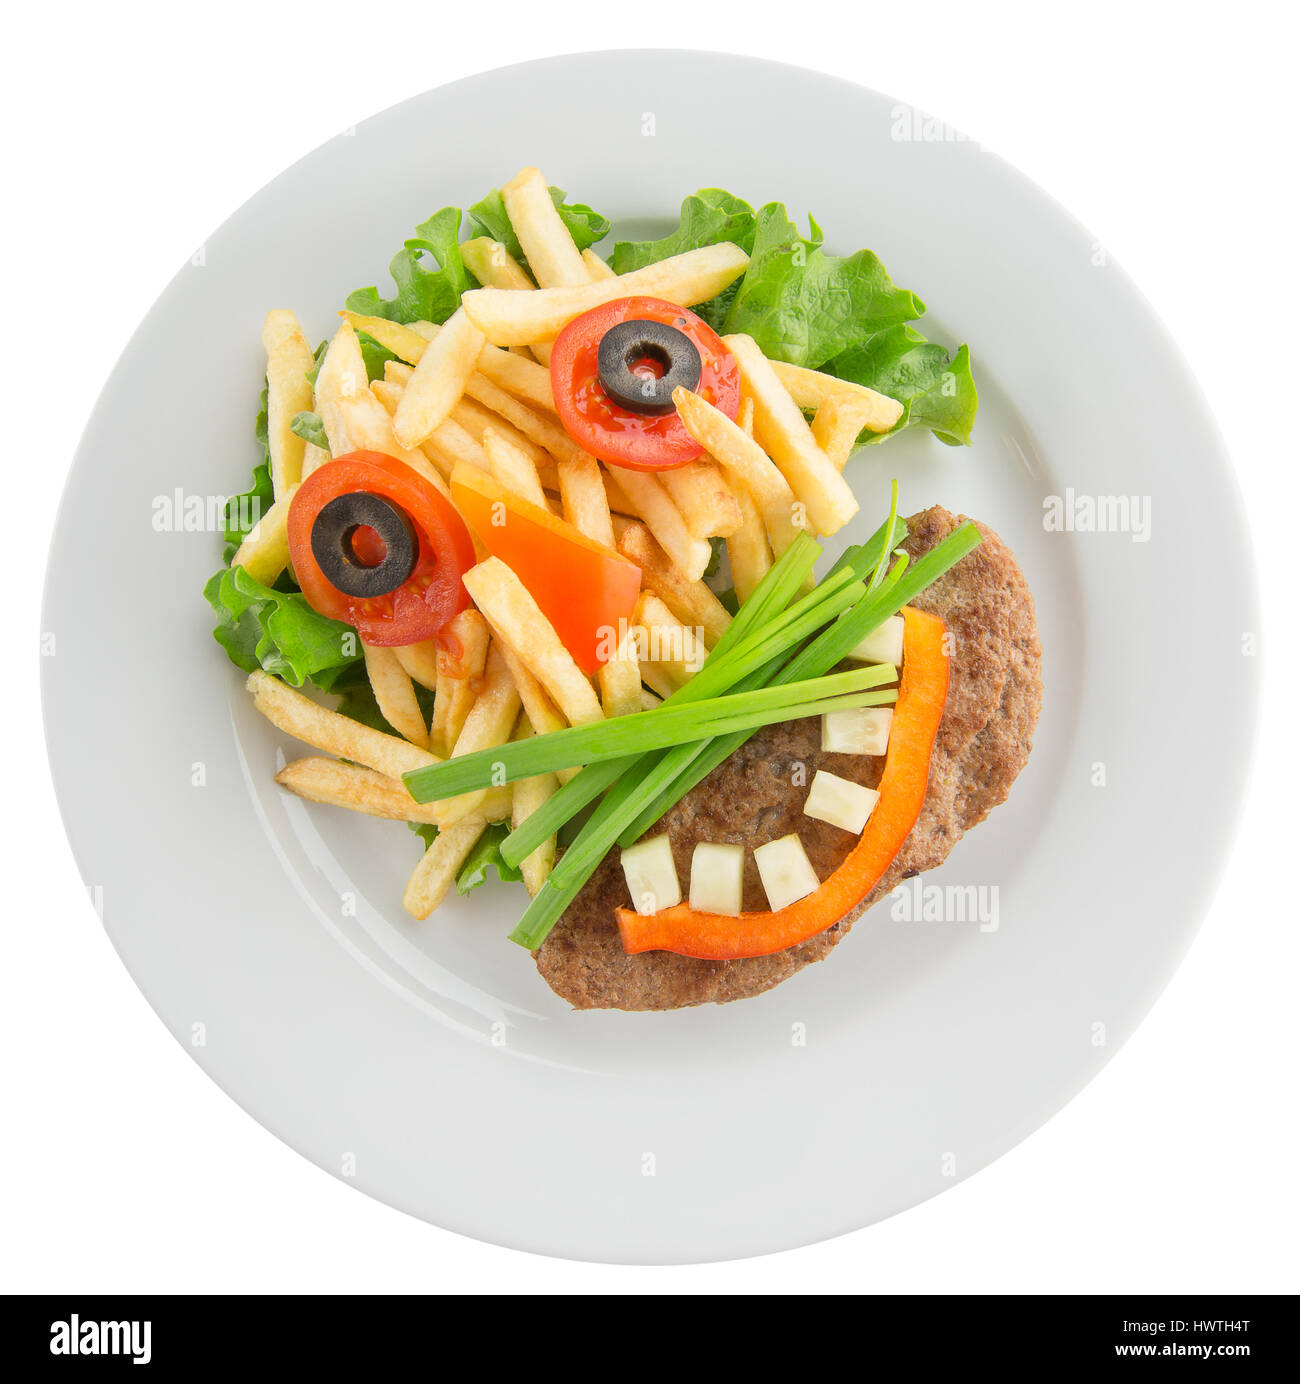 Kartoffelchips mit Gemüse in Form von lustigen Gesicht. Stockfoto